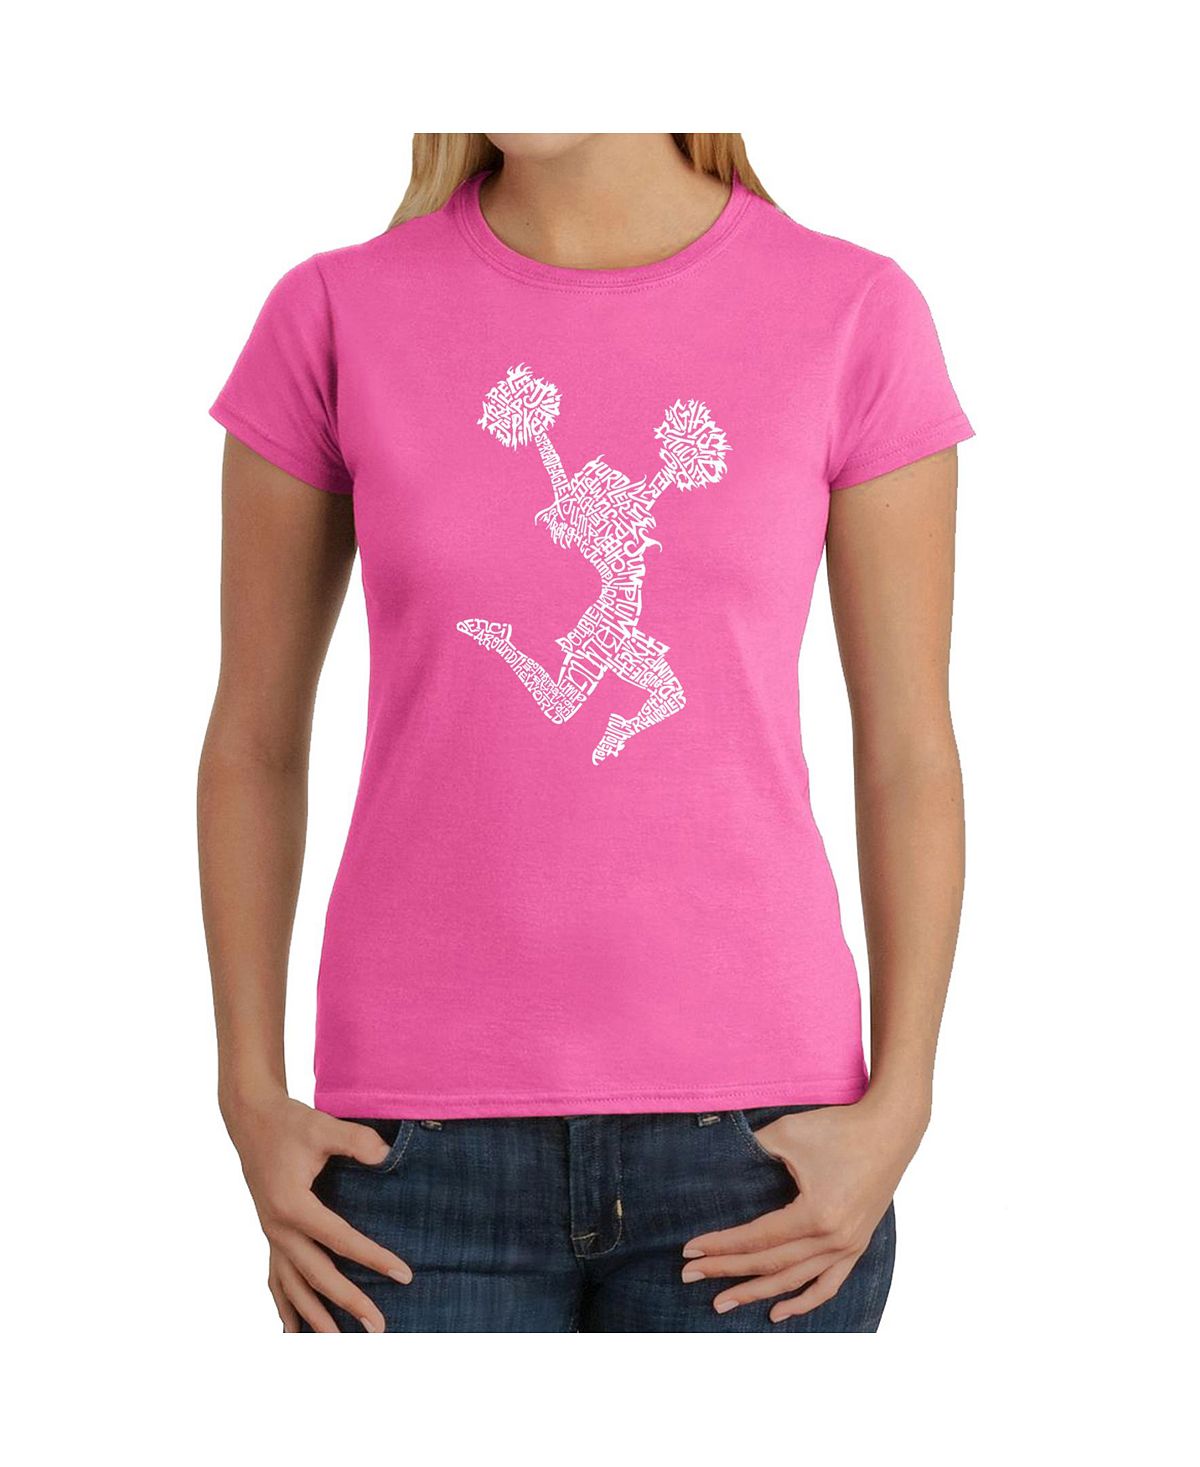 Женская футболка word art - развеселить LA Pop Art, розовый